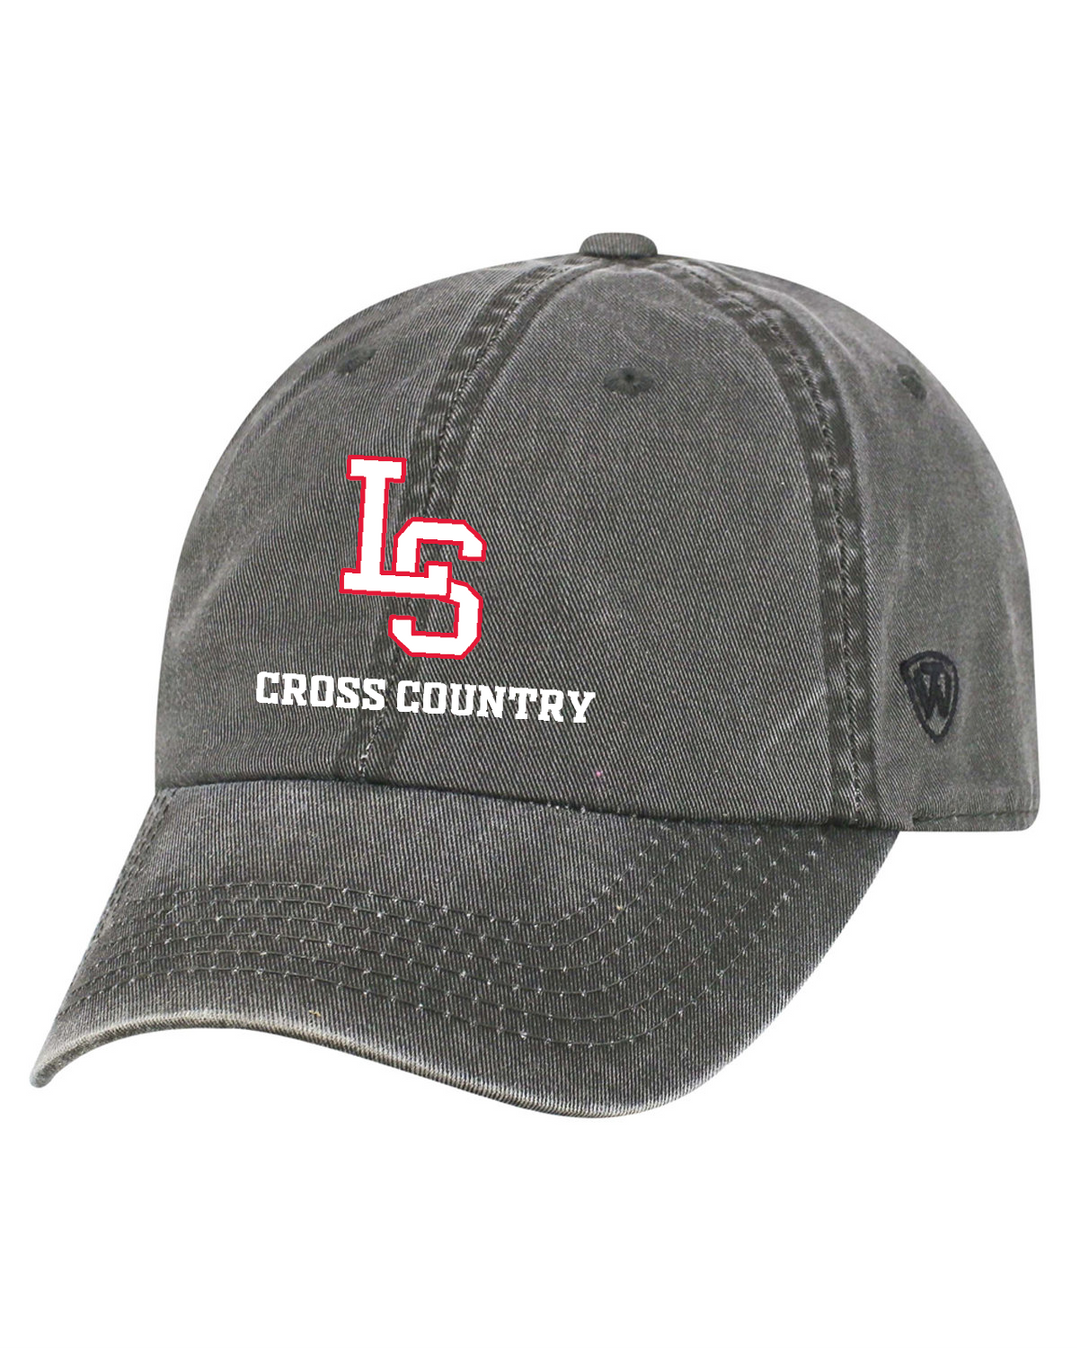 Lincoln Sudbury Cross Country Cap (TW5516)